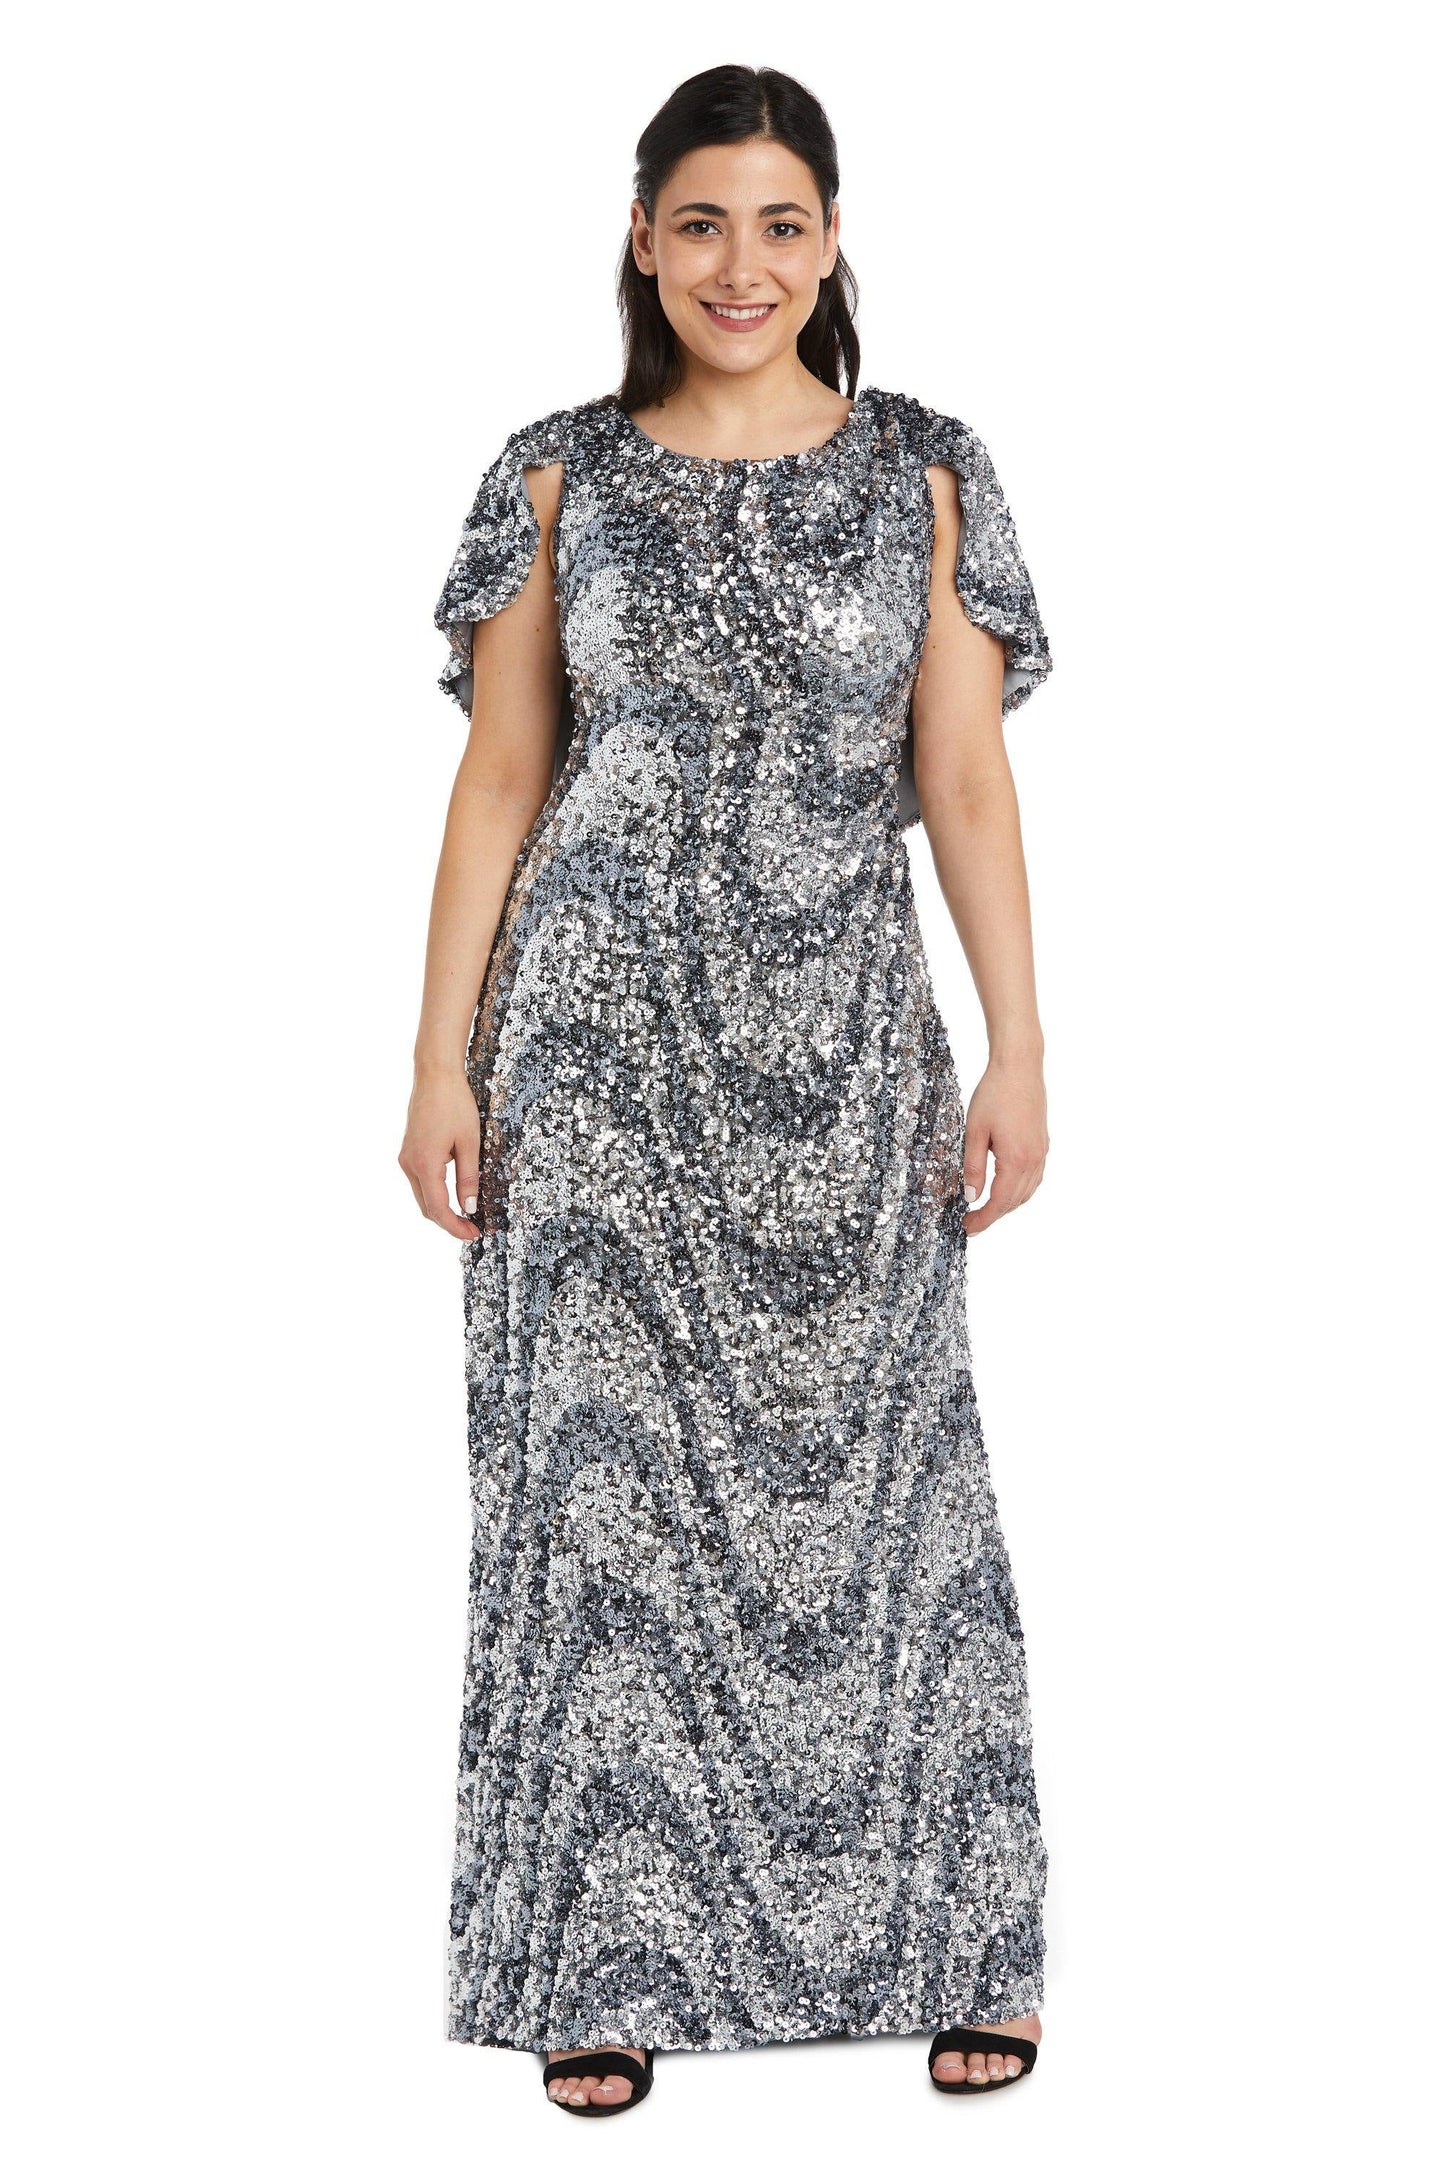 R&M Richards Long Formal Capelet Petite Dress 7510P - The Dress Outlet